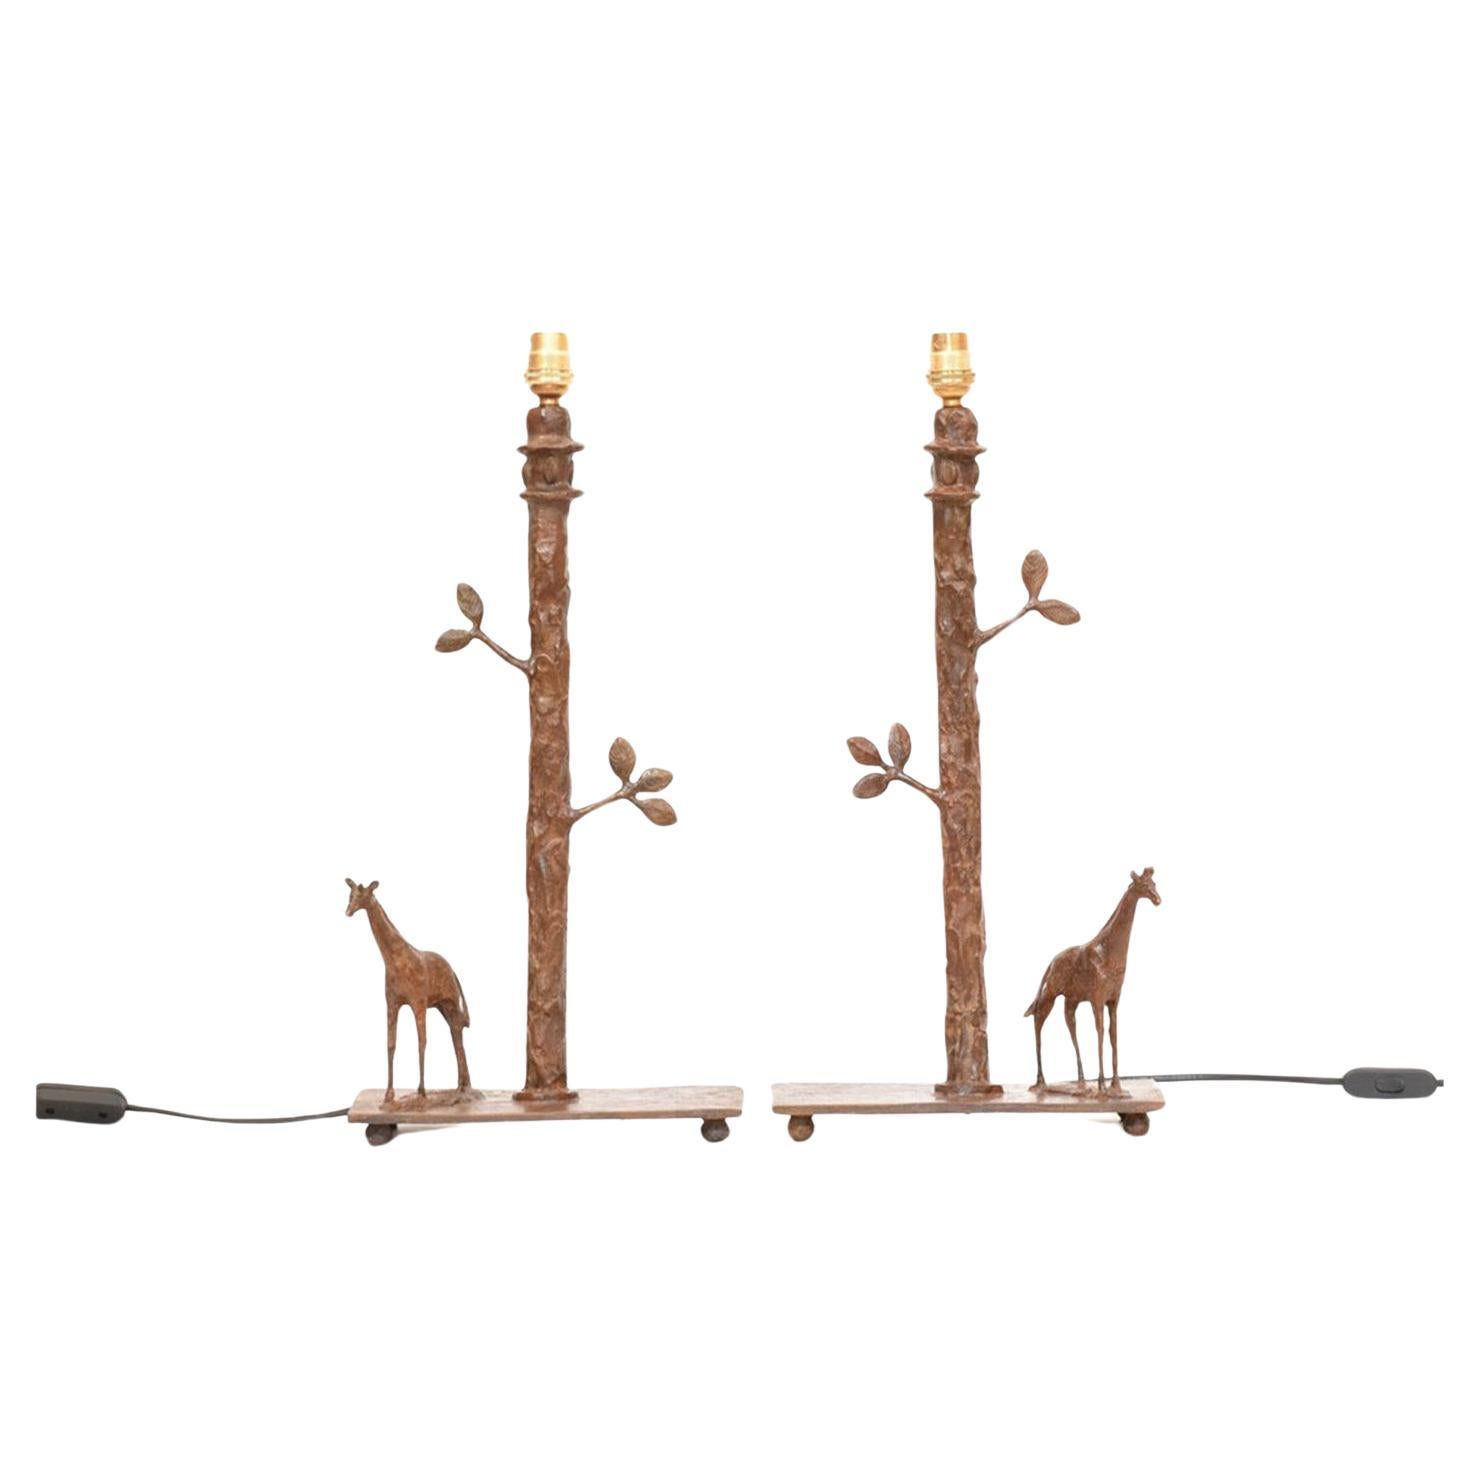 Lampes de table Girafe sculpturales fabriquées à la main en bronze moulé selon la méthode de la cire perdue. Livré par paire, à l'exclusion des abat-jour. Sculptés, moulés et finis individuellement à la main.

Hauteur 41 cm (y compris les luminaires